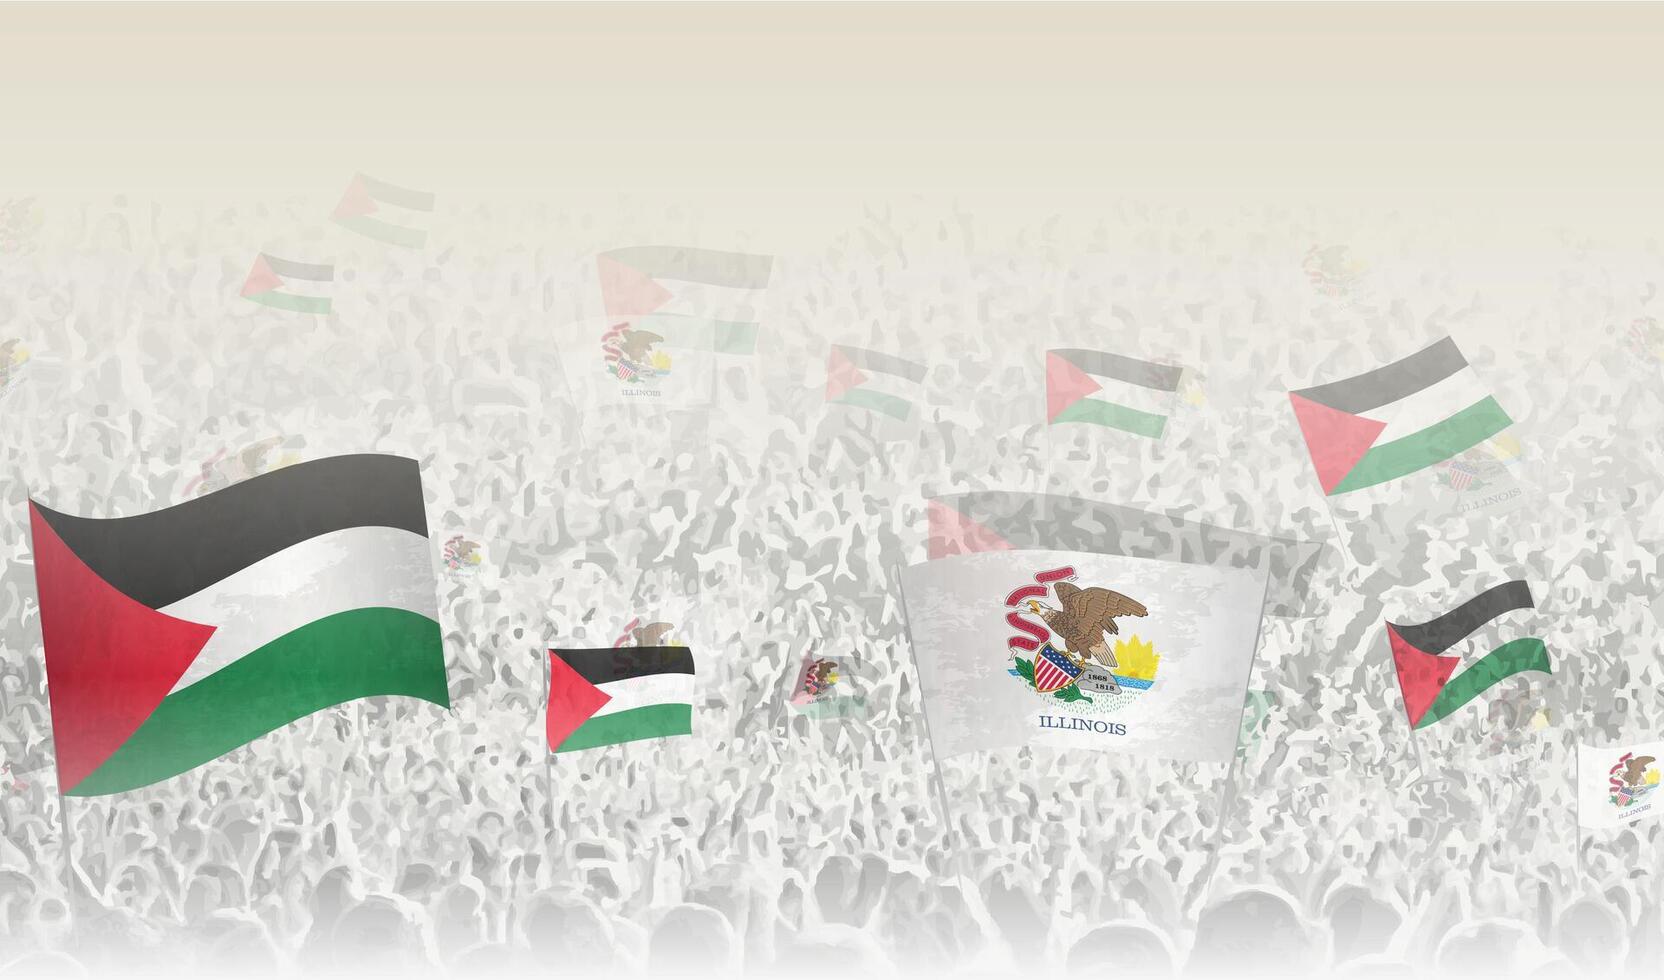 Palestine et Illinois drapeaux dans une foule de applaudissement personnes. vecteur